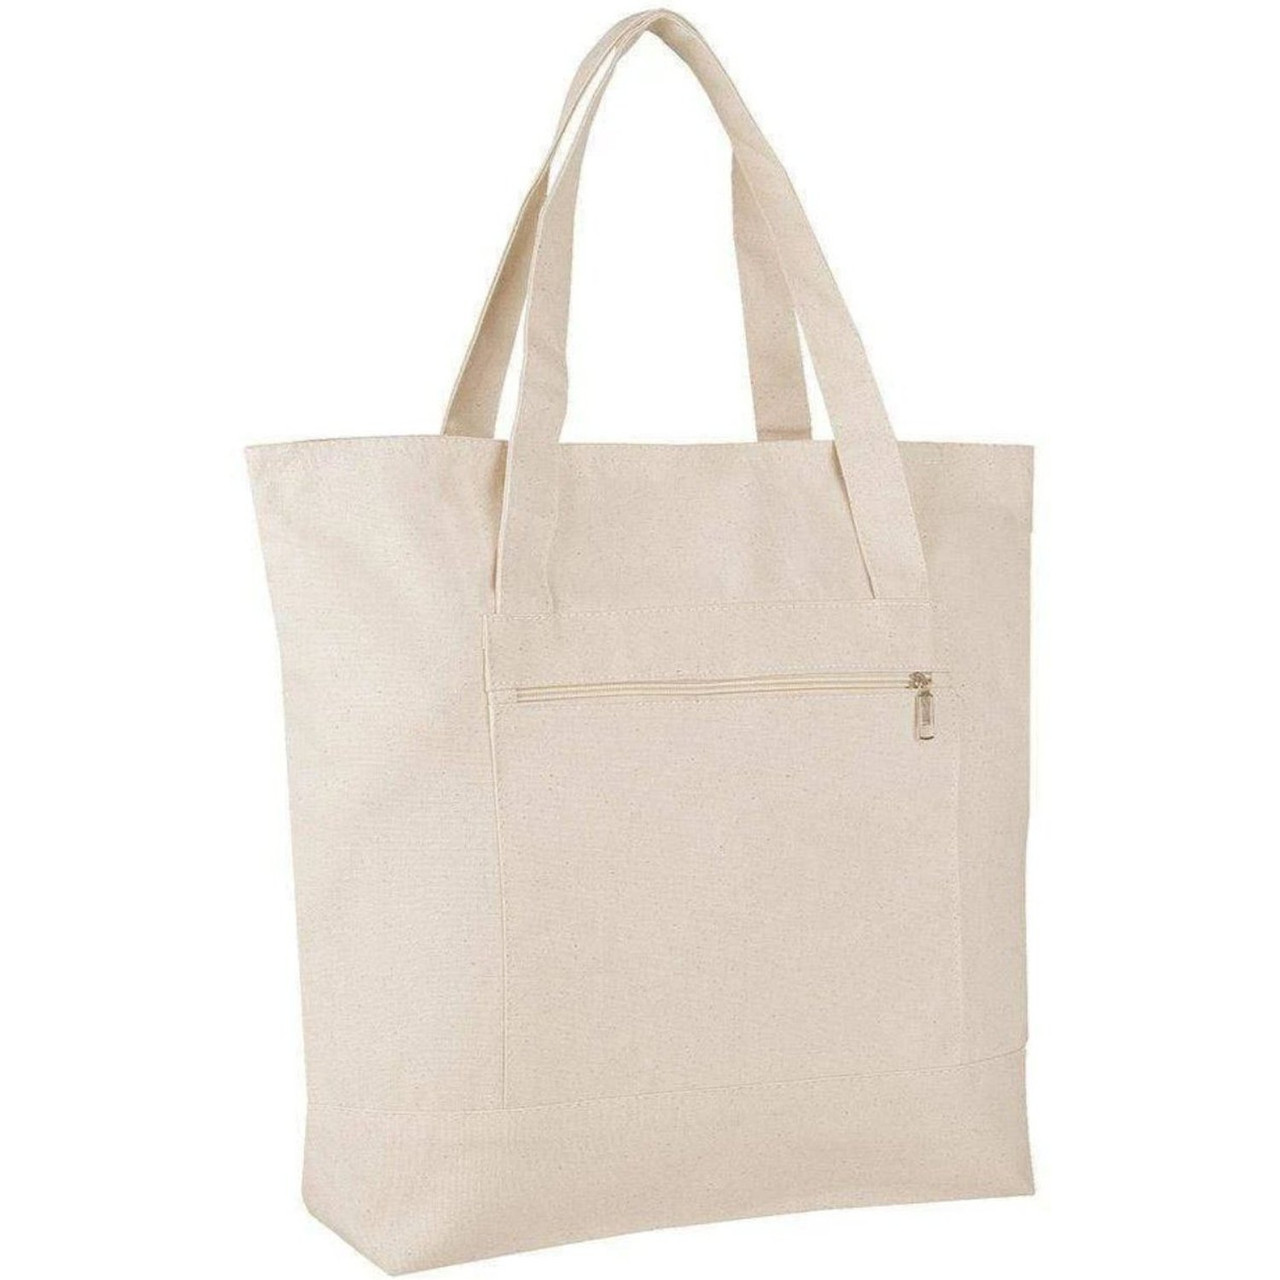 SPIKRAK shopping bag, cotton/natural, 13 gallon - IKEA